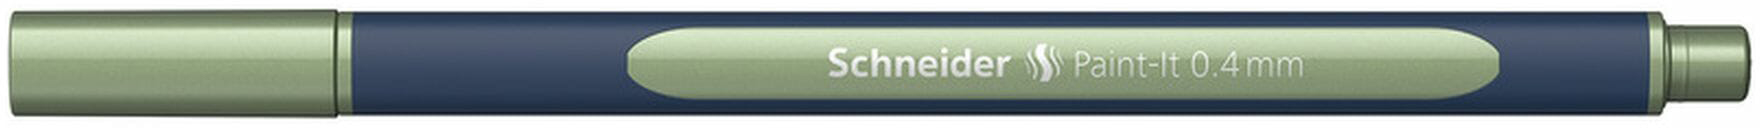 SCHNEIDER Roller Paint-it ML050011035 vintage green metallic